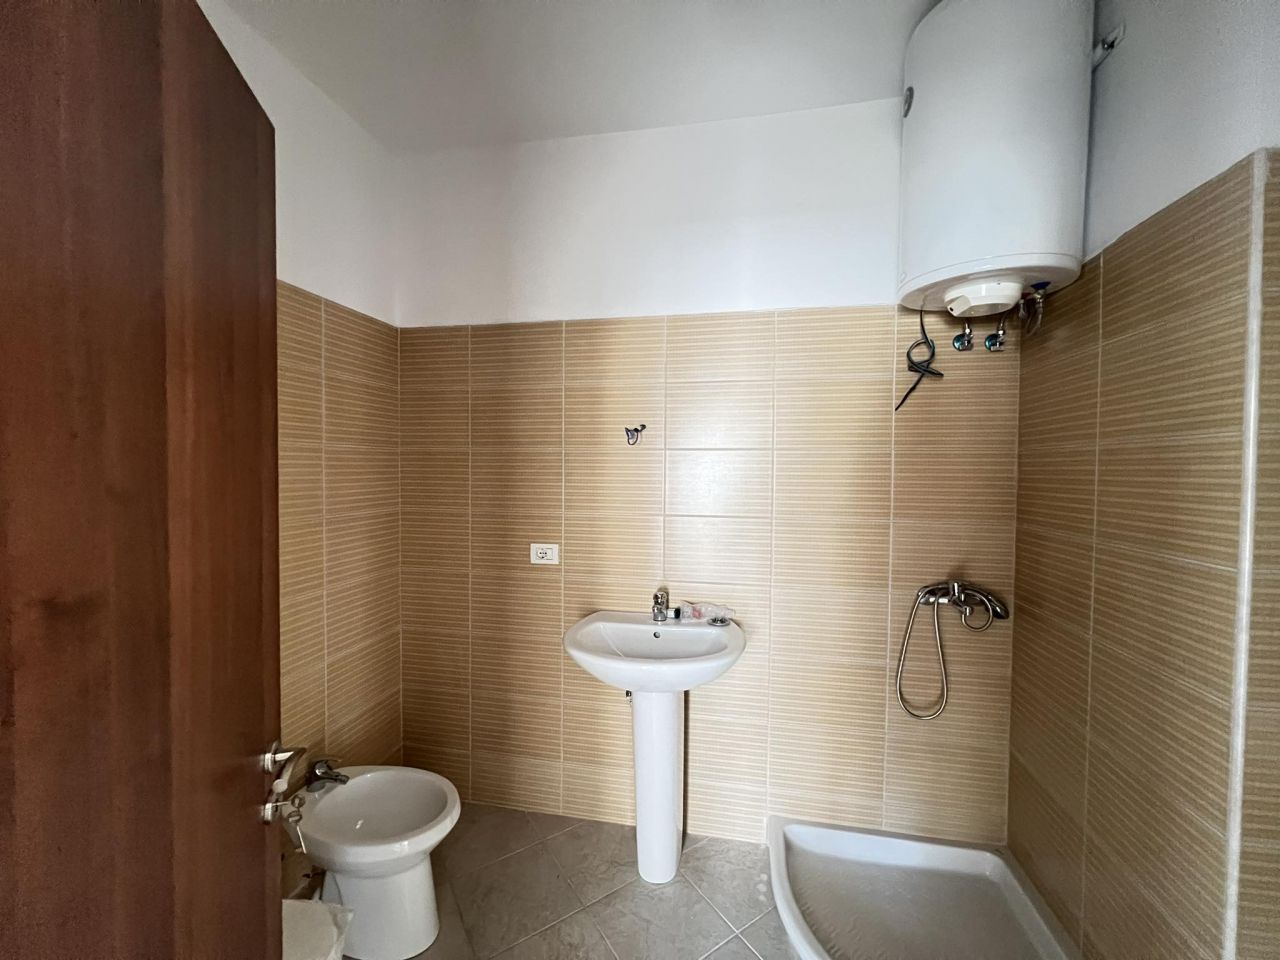 Mieszkanie z dwiema sypialniami i dwiema łazienkami na sprzedaż w Sarandzie w Albanii, w niewielkiej odległości od morza, zbudowane w dobrej jakości